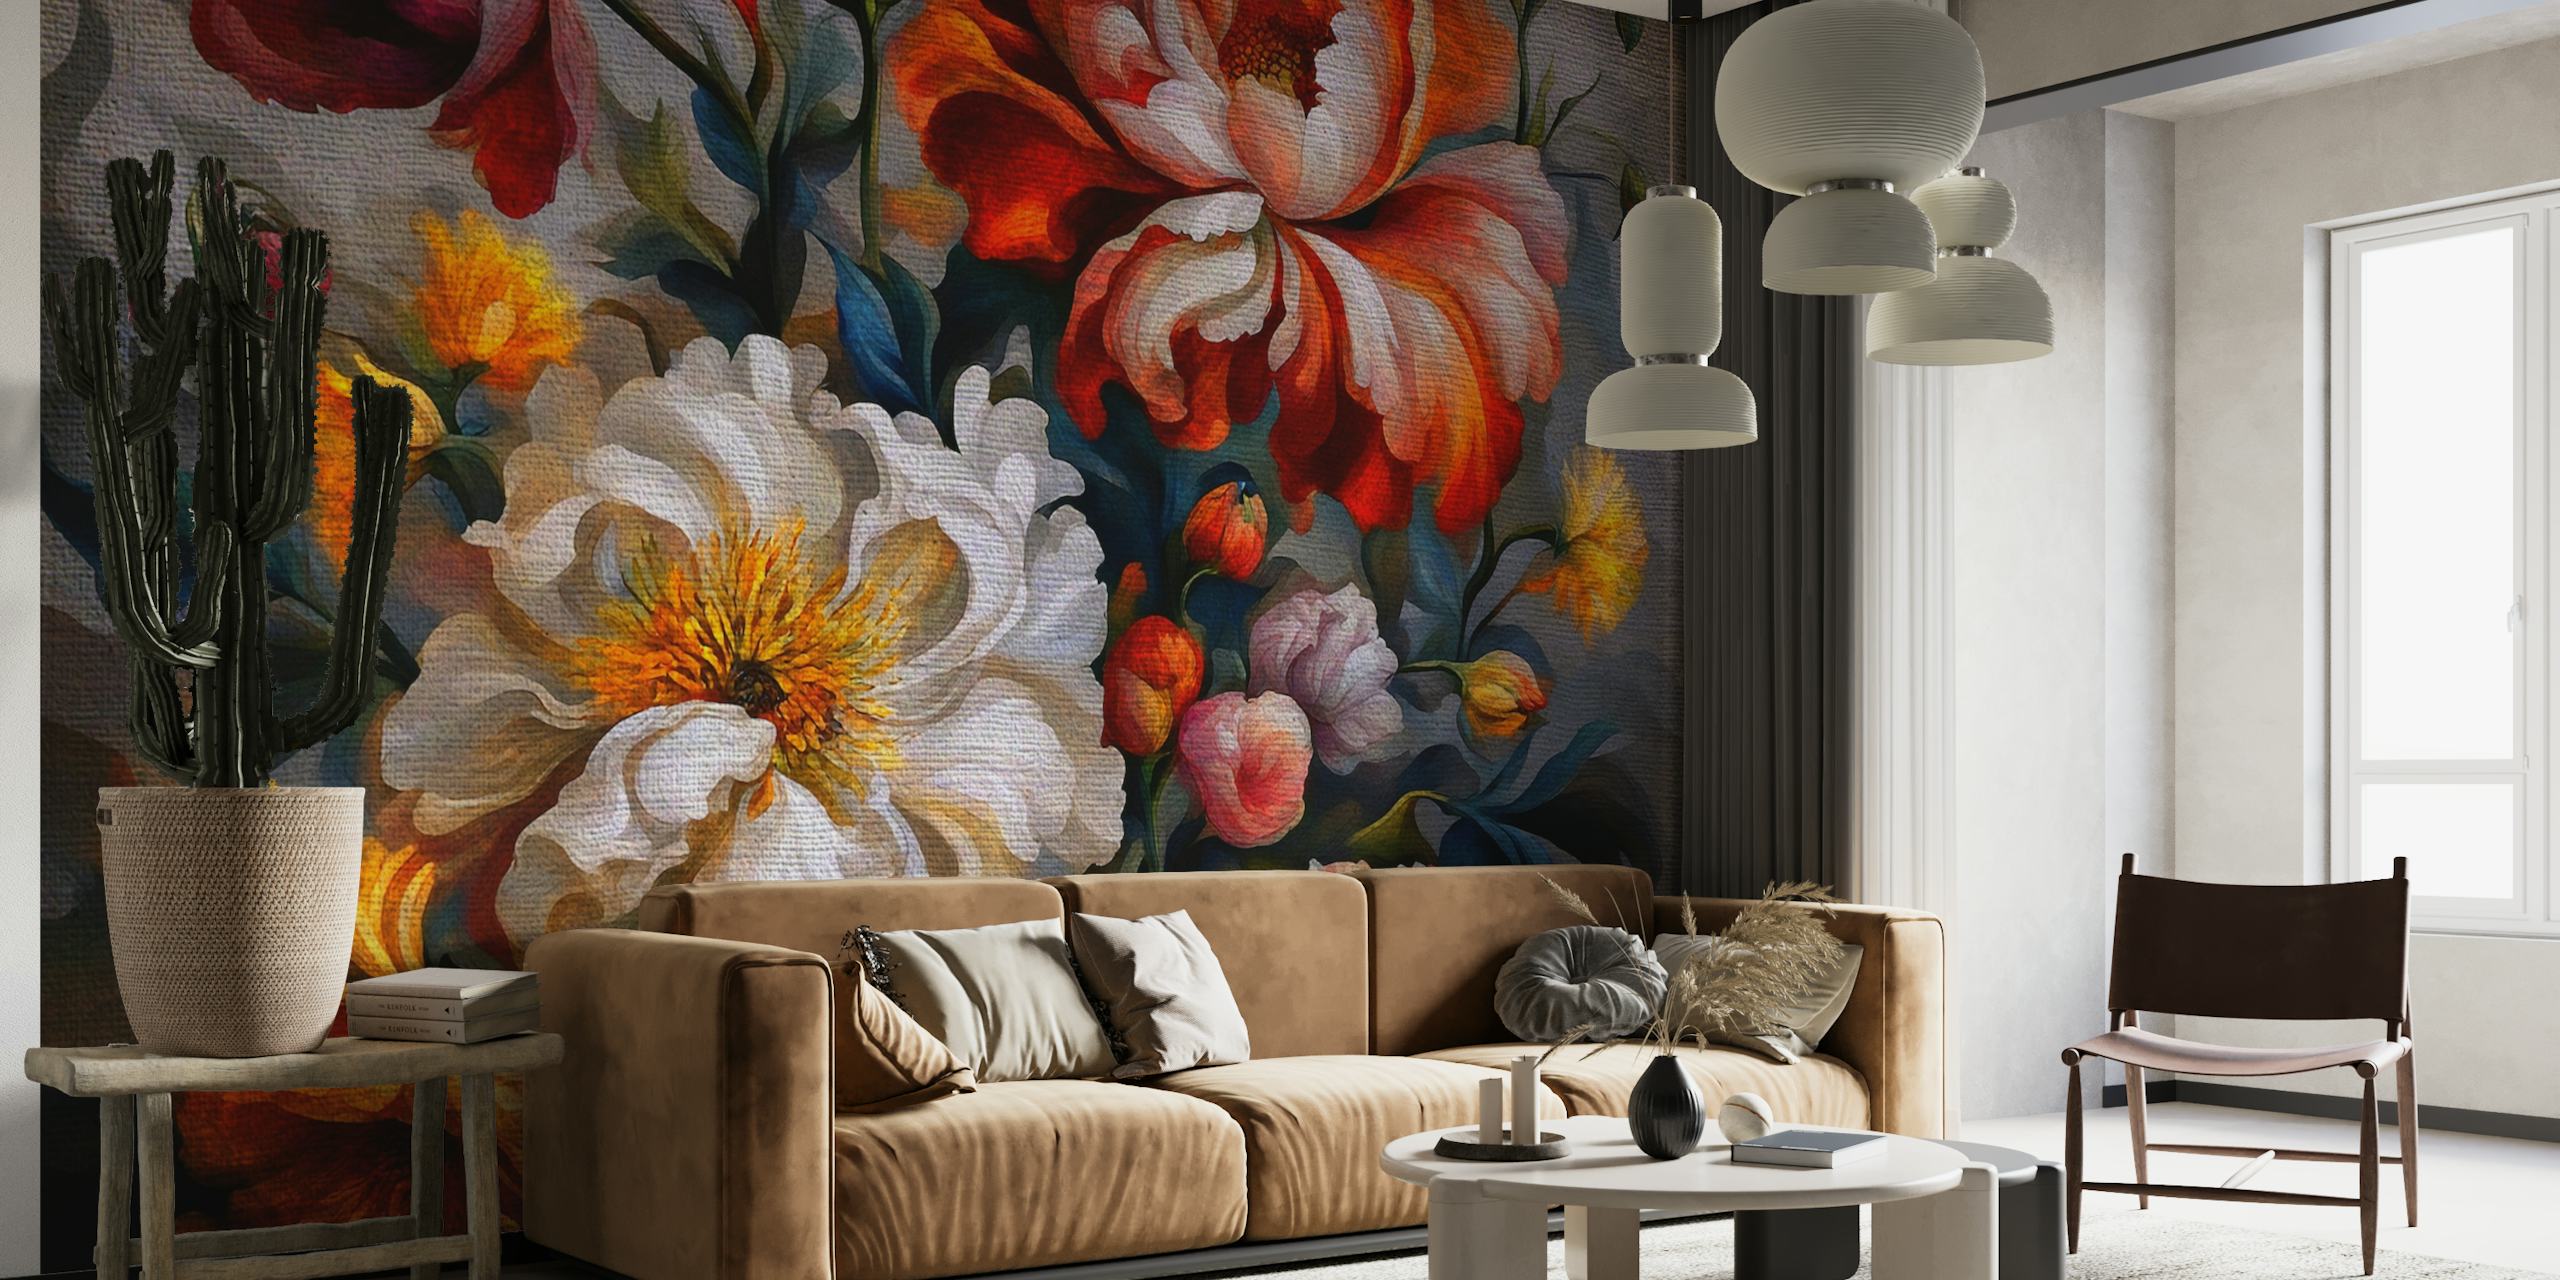 Zidna slika s cvijećem u baroknom stilu na ćudljivoj tamnoj pozadini